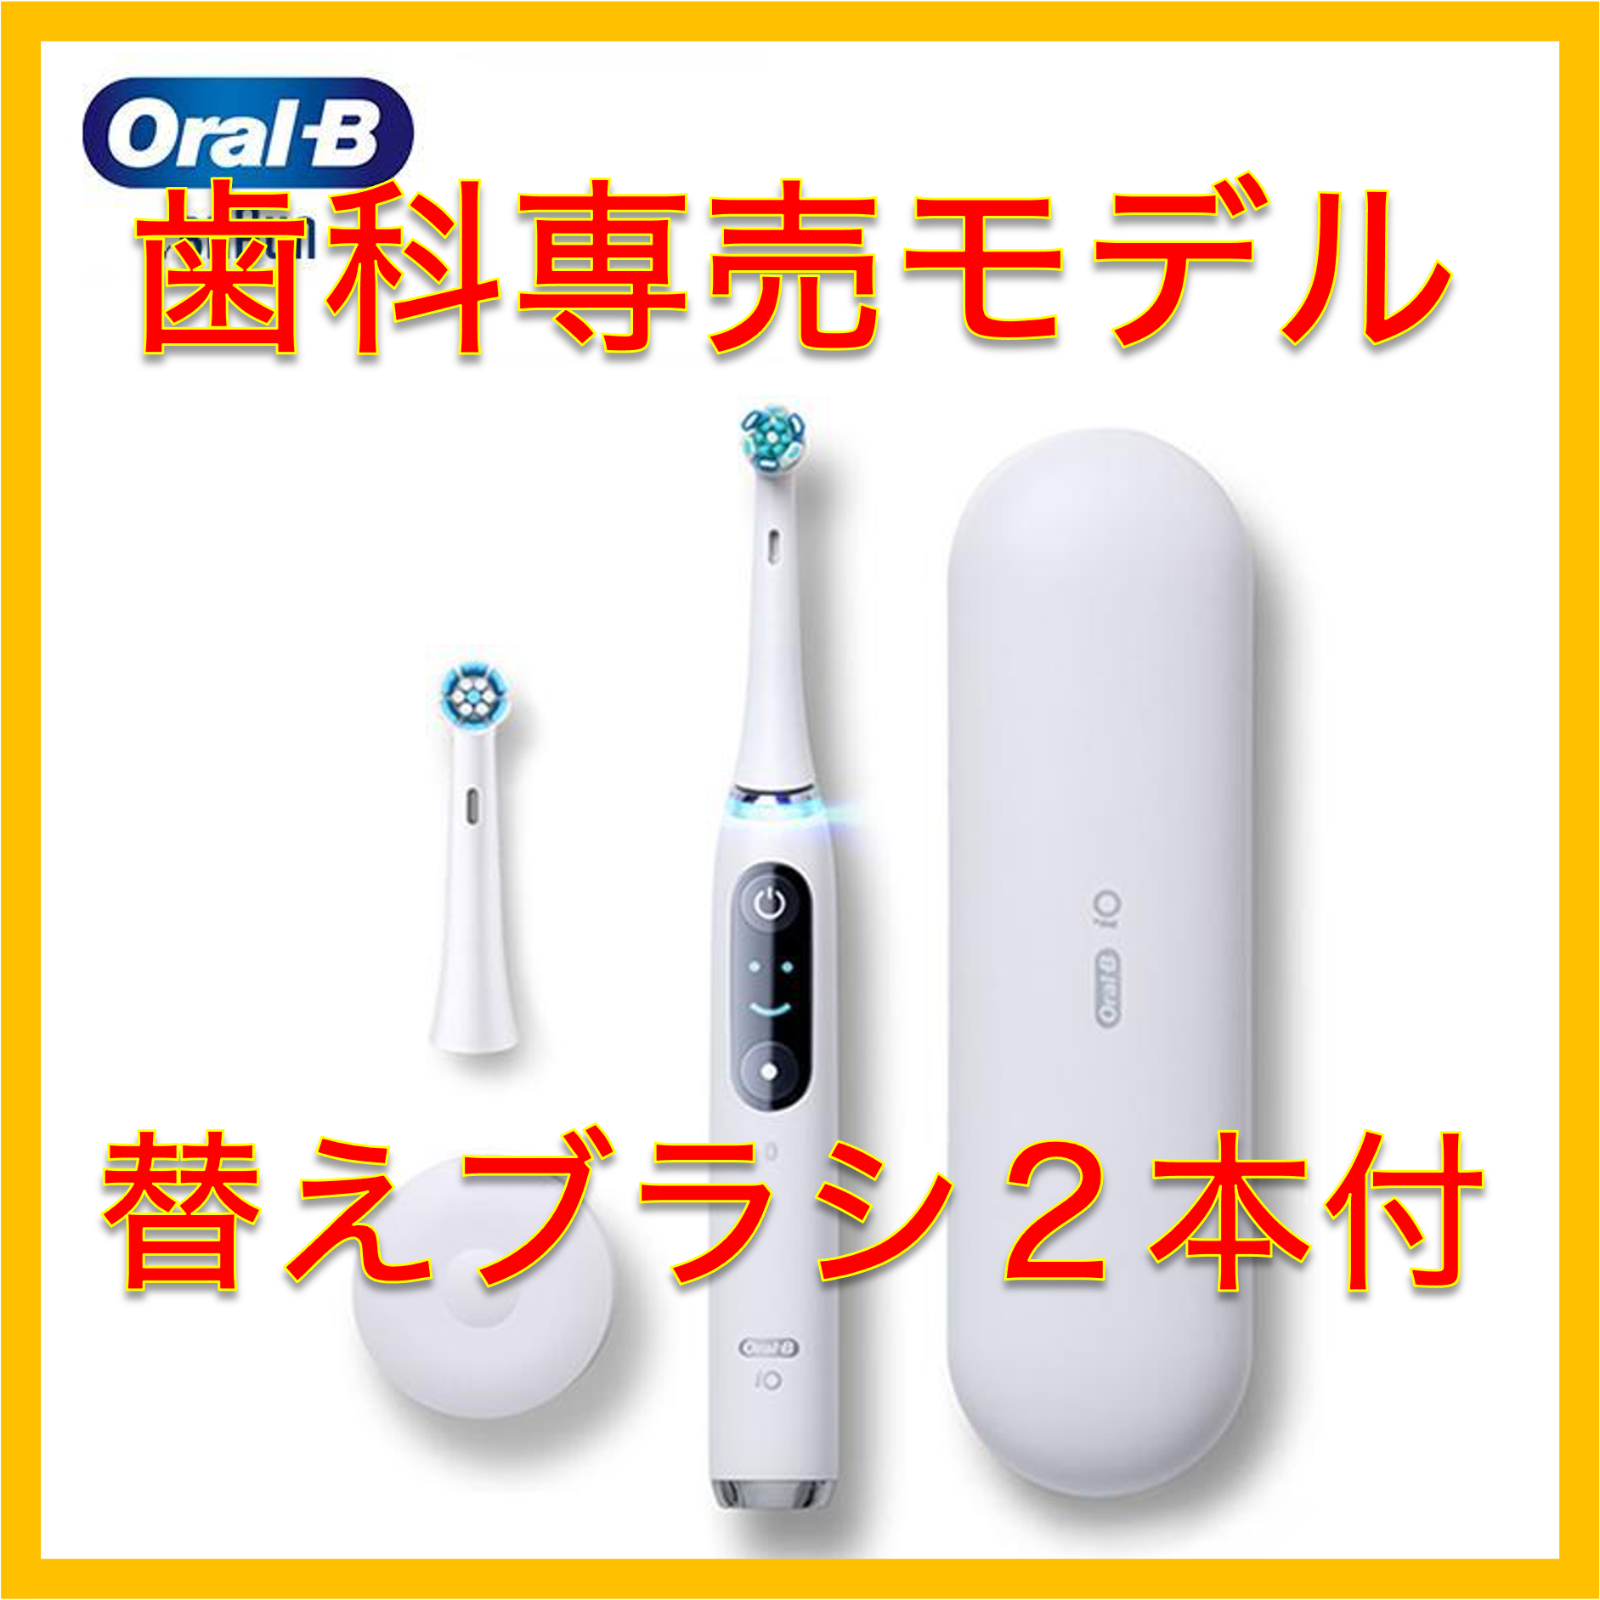 オーラルB 電動歯ブラシ iO9 プロフェッショナル 歯科医院モデル - 健康